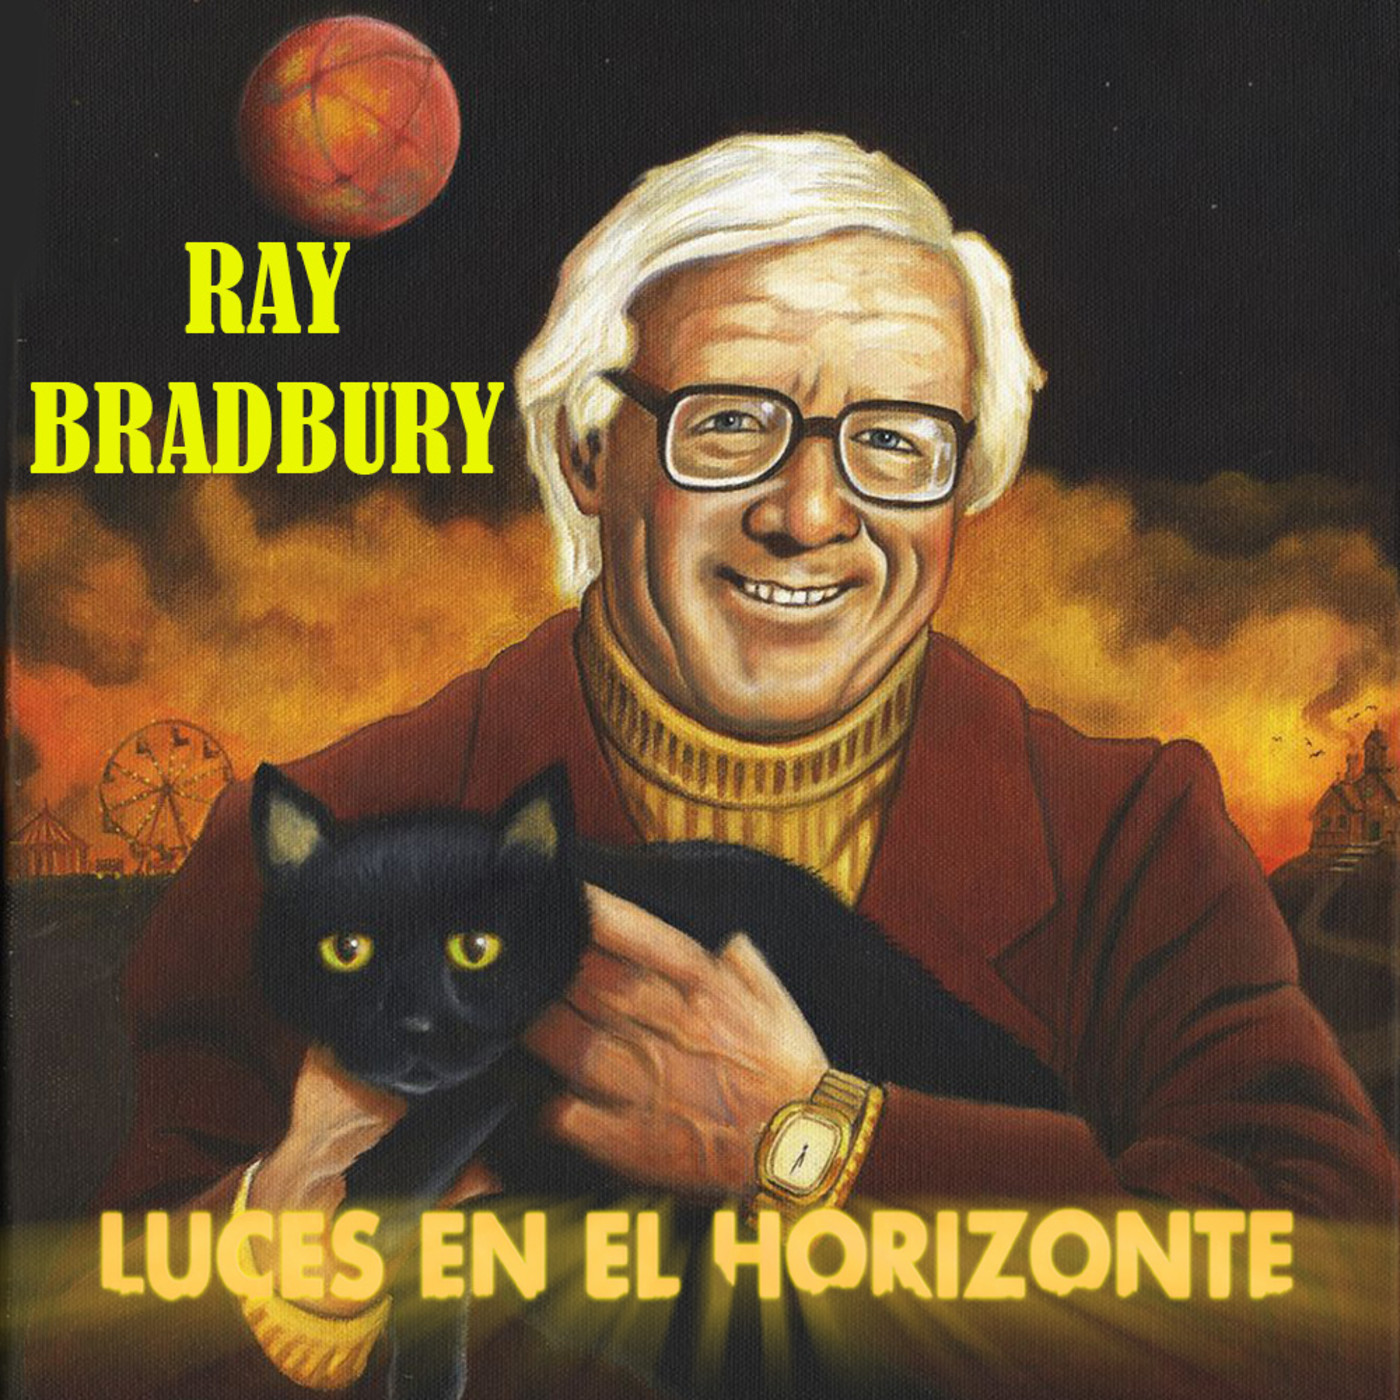 RAY BRADBURY - Luces en el Horizonte